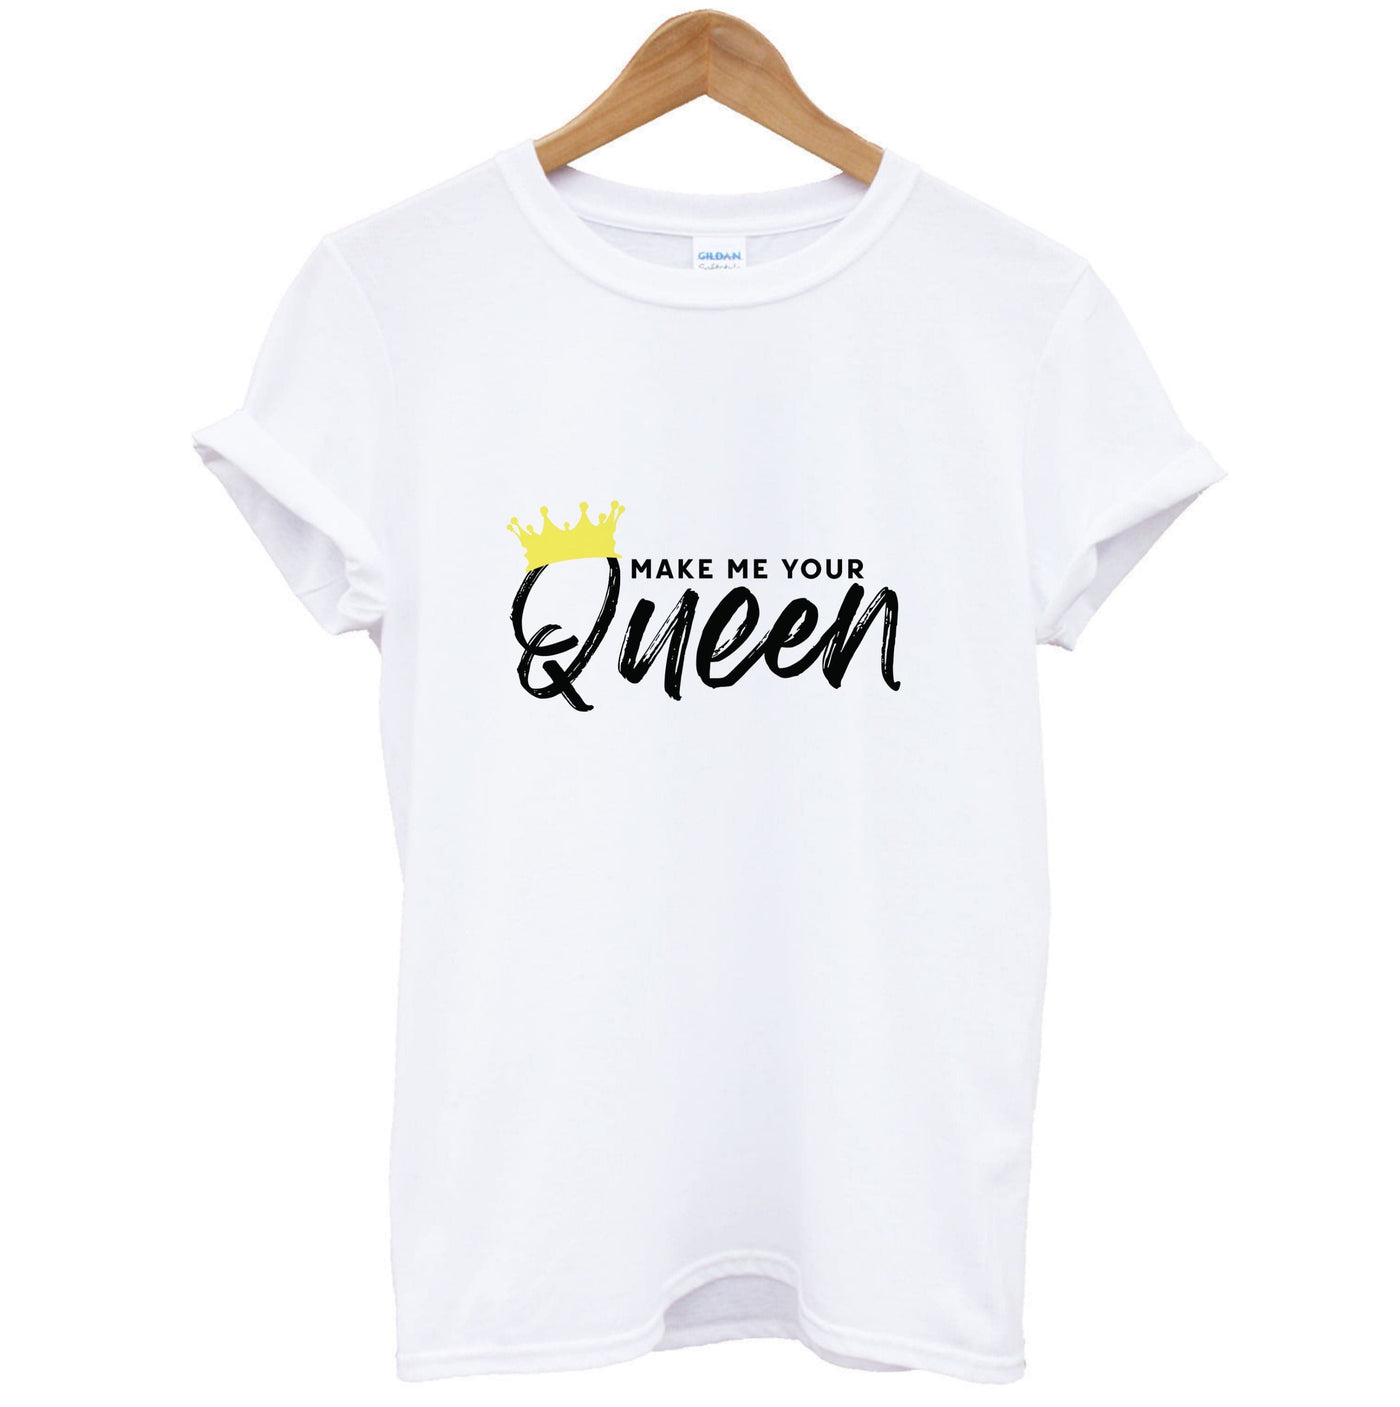 Make Me Your Queen - Declan Mckenna T-Shirt